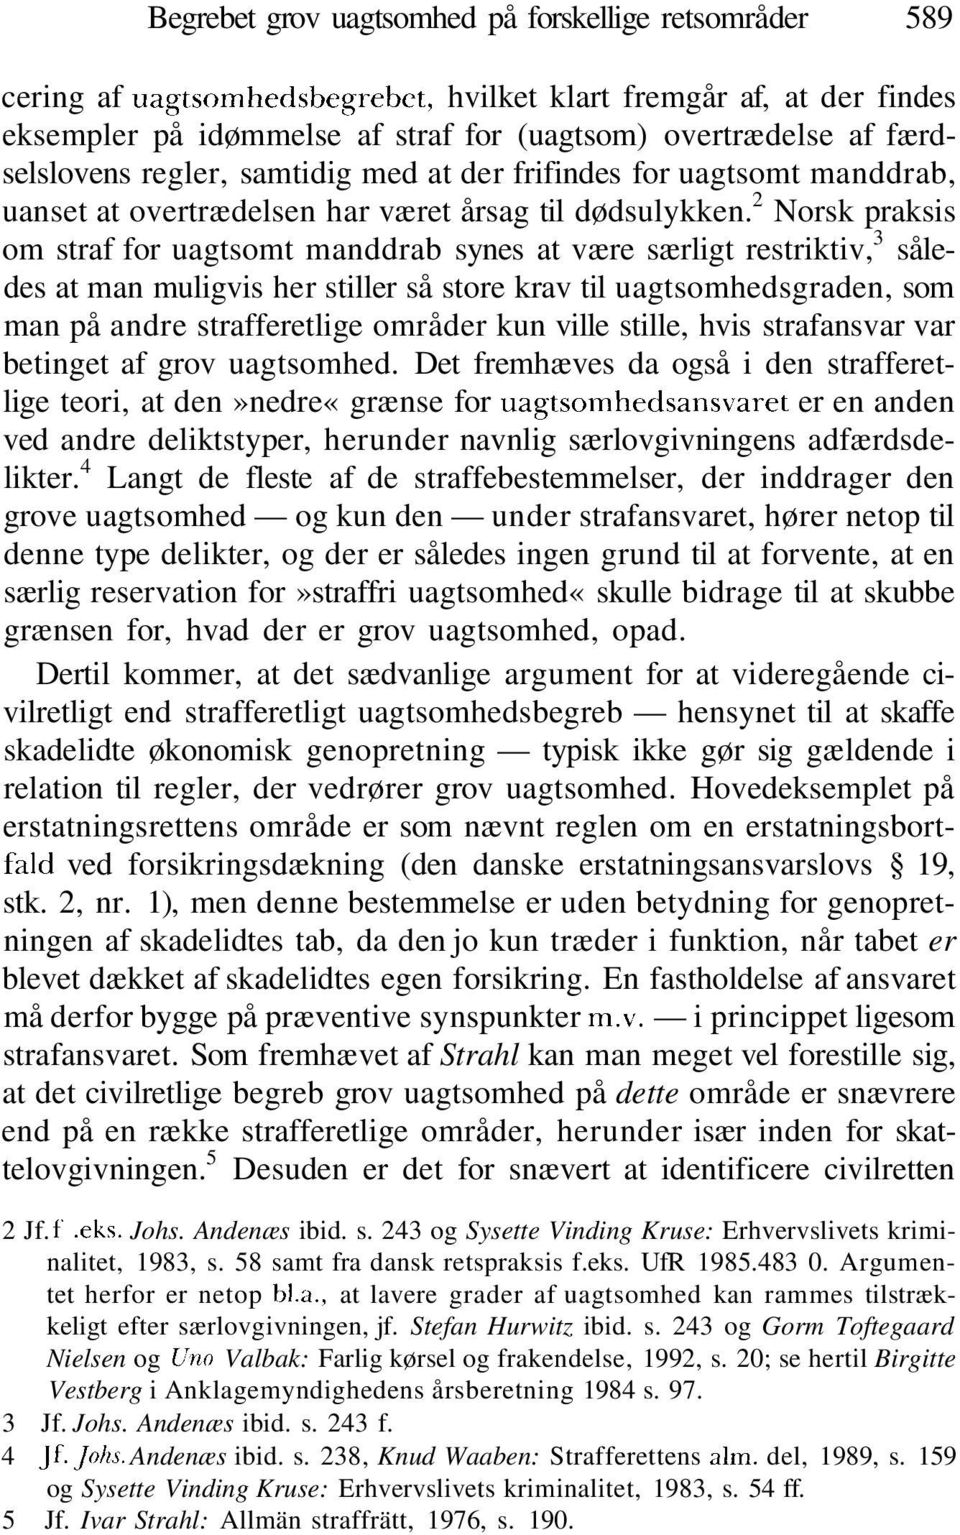 2 Norsk praksis om straf for uagtsomt manddrab synes at være særligt restriktiv, 3 således at man muligvis her stiller så store krav til uagtsomhedsgraden, som man på andre strafferetlige områder kun